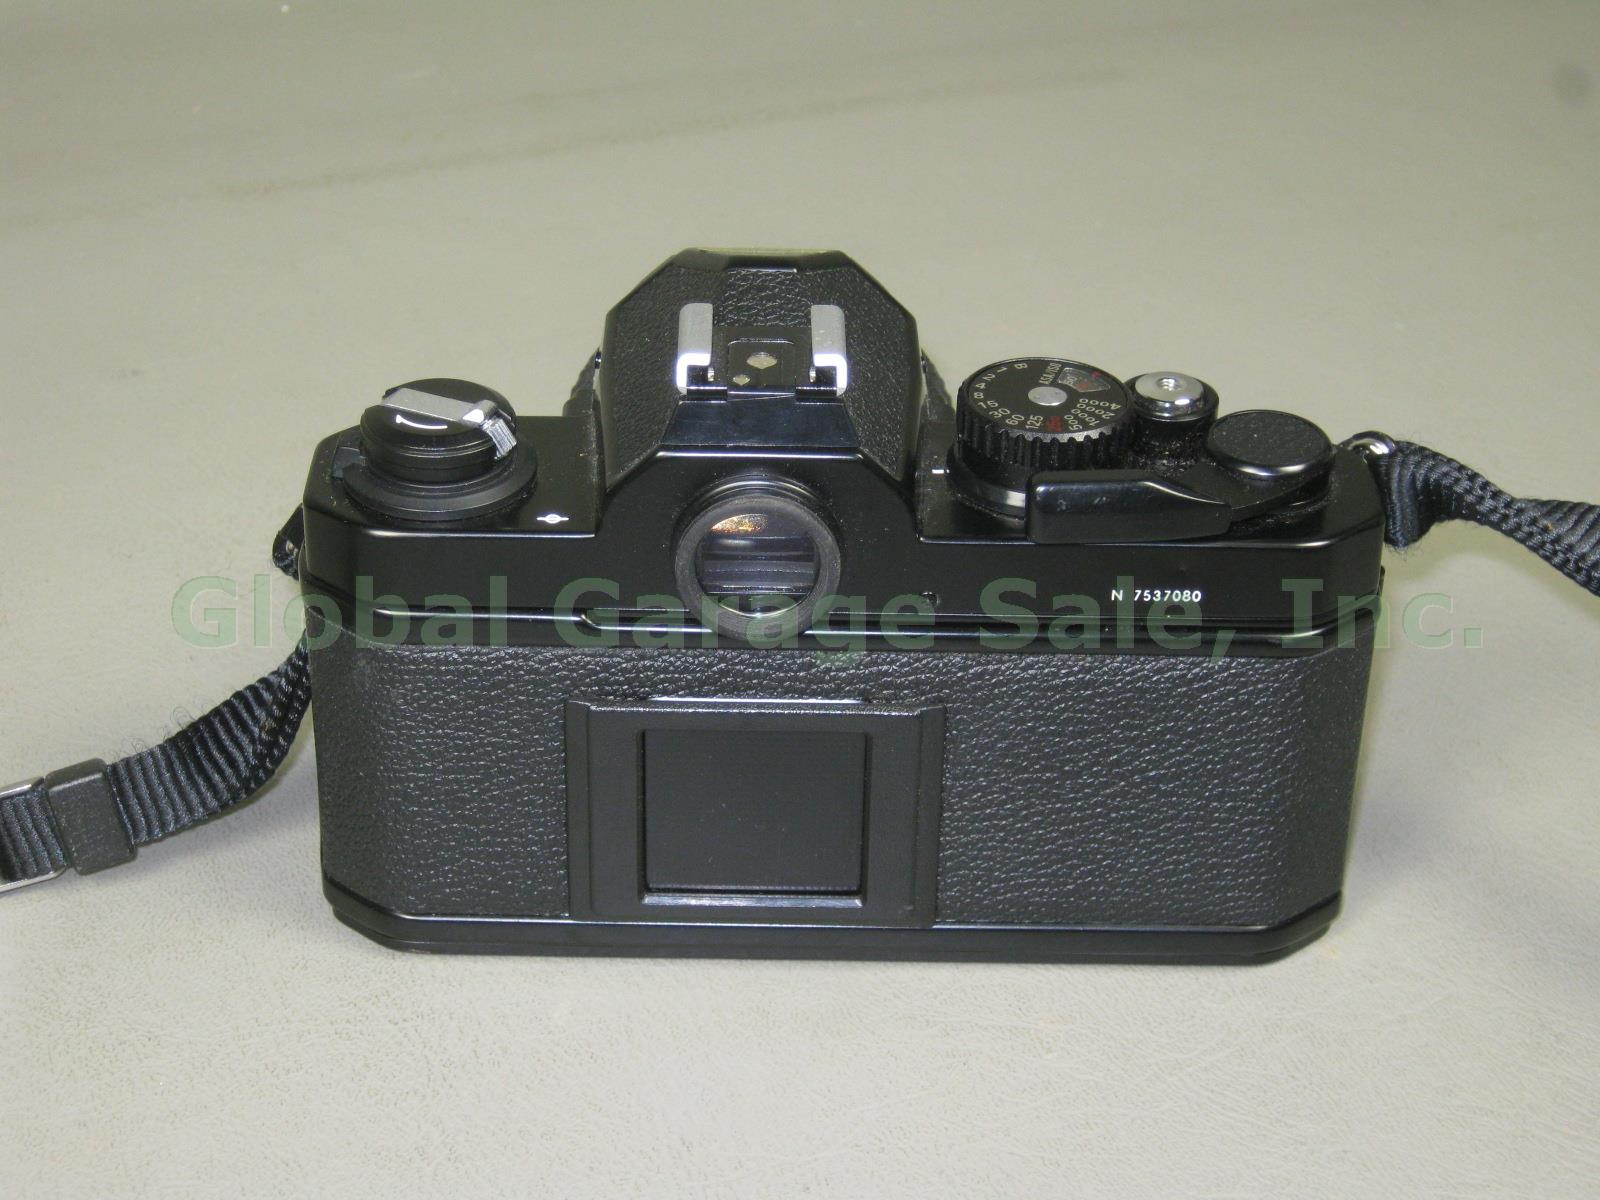 Vtg Black Nikon FM2 35mm SLR Film Camera Nikkor 50mm 1.4 Lens Bundle N7537080 NR 3